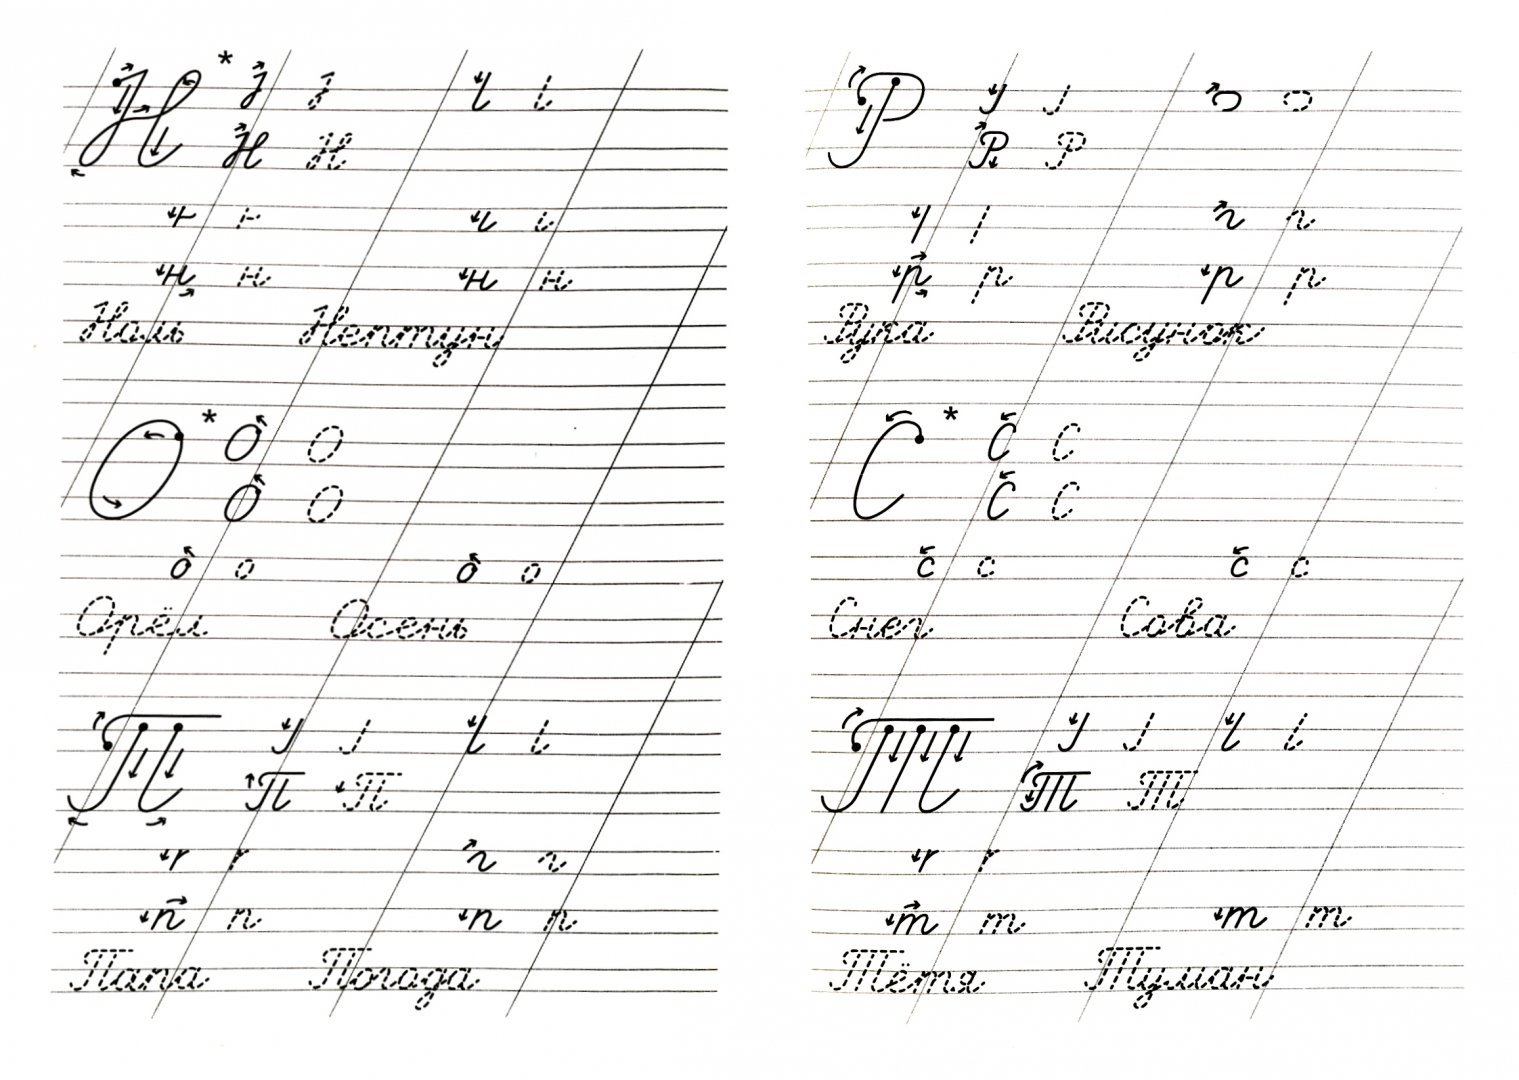 Иллюстрация 1 из 16 для Правильные прописи для хорошего почерка - Георгиева, Макеева | Лабиринт - книги. Источник: Лабиринт